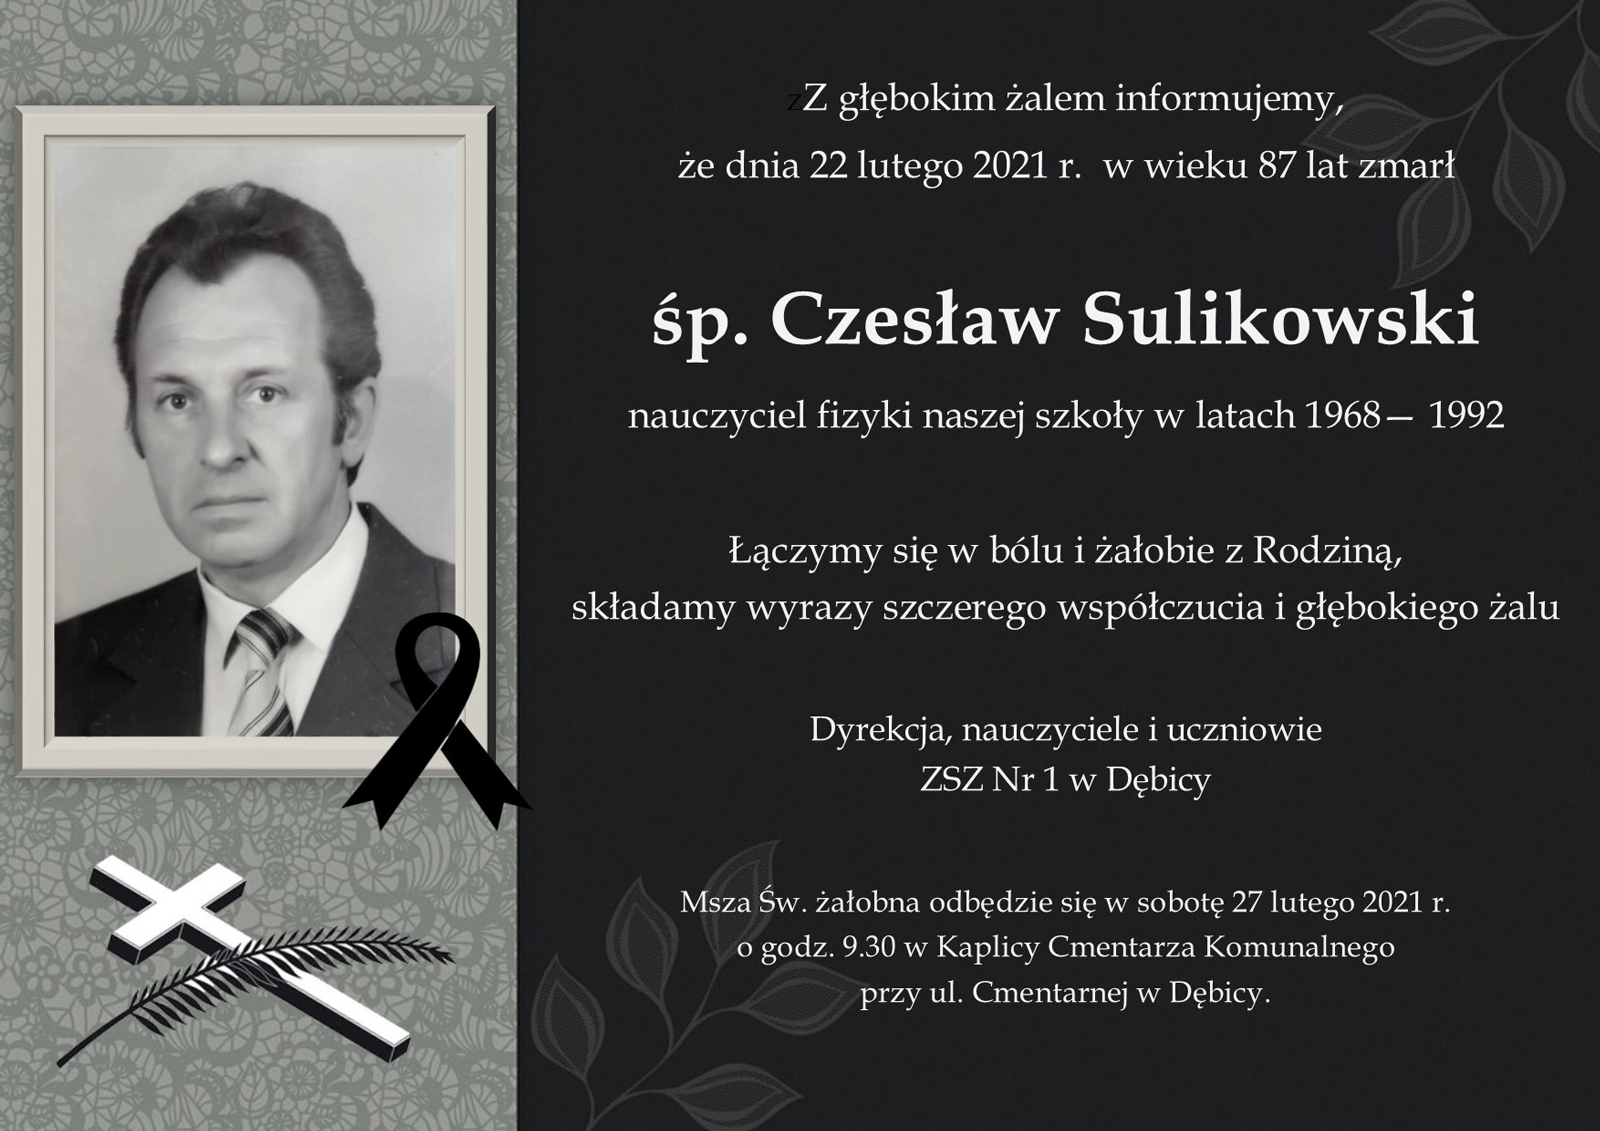 czeslaw sulikowski 1600